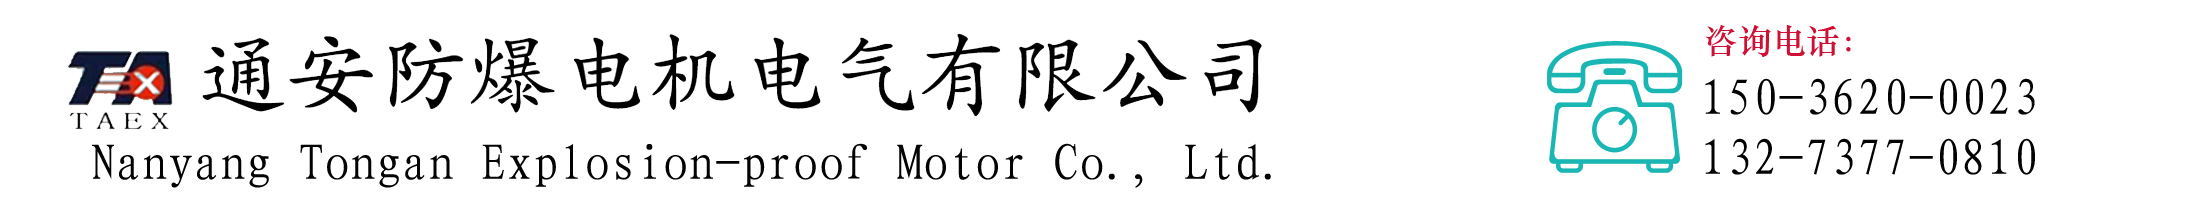 通安防爆电气_Logo